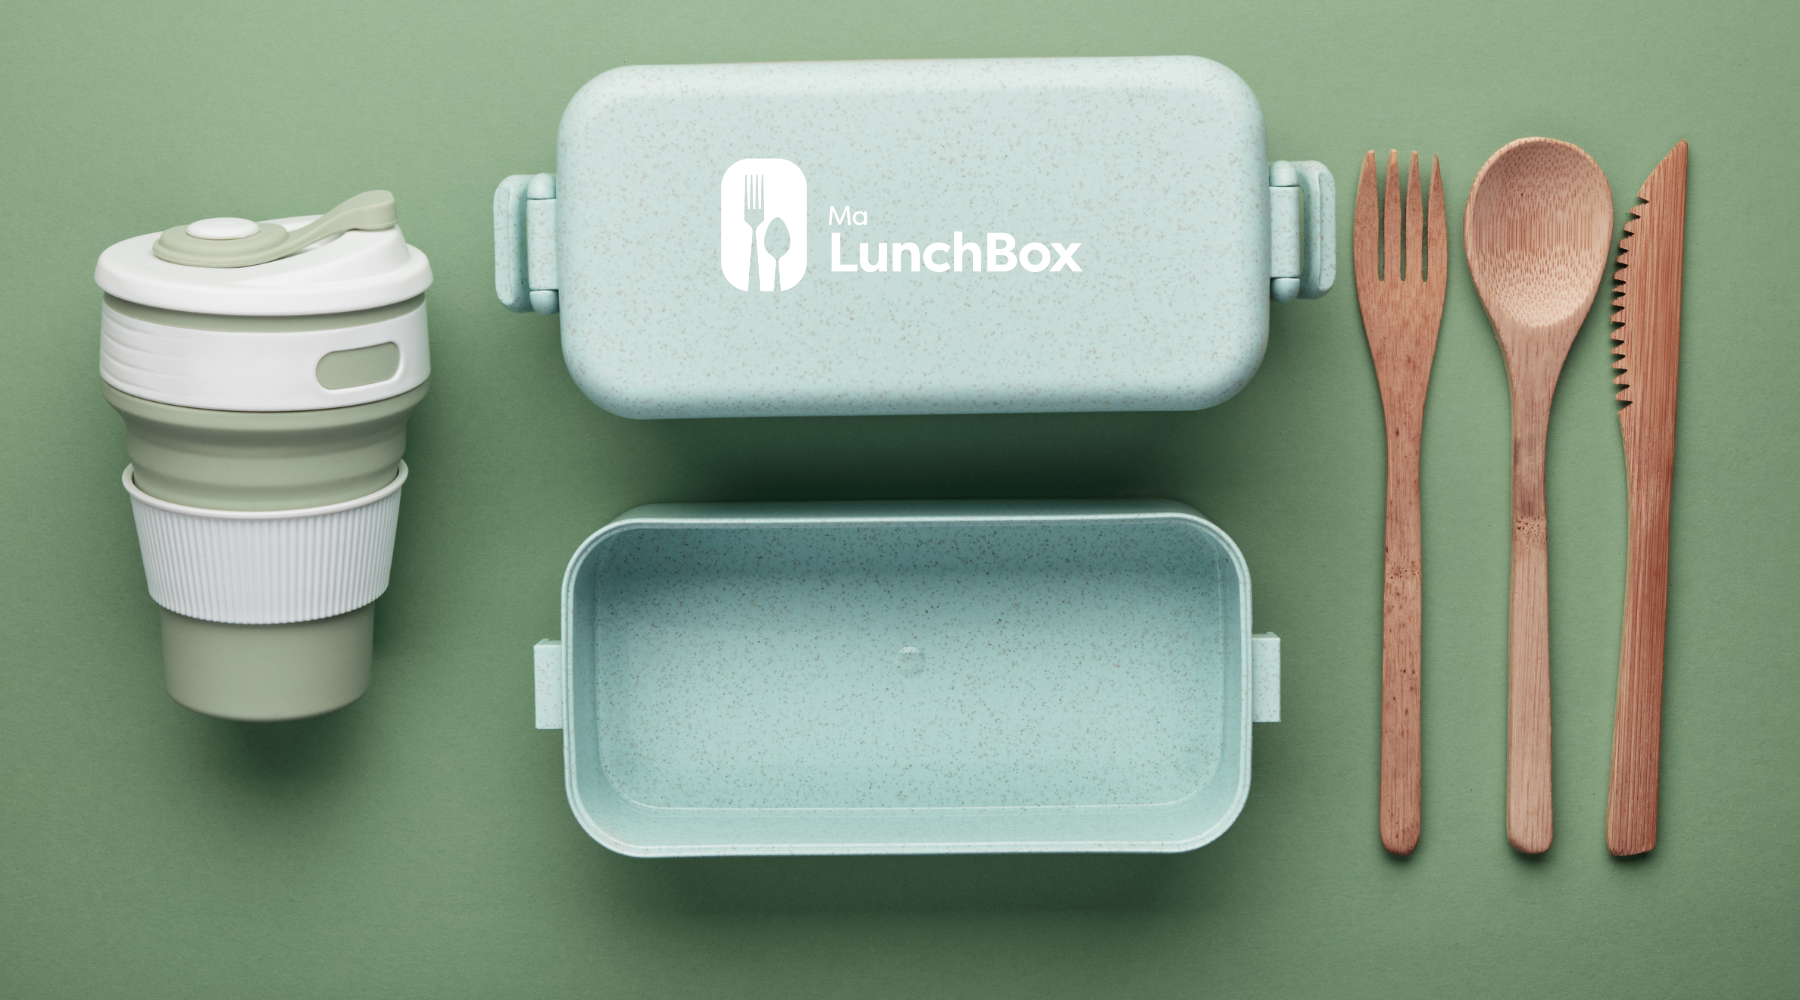 Boîte Lunchbox en verre avec couverts en plastique 1,2L